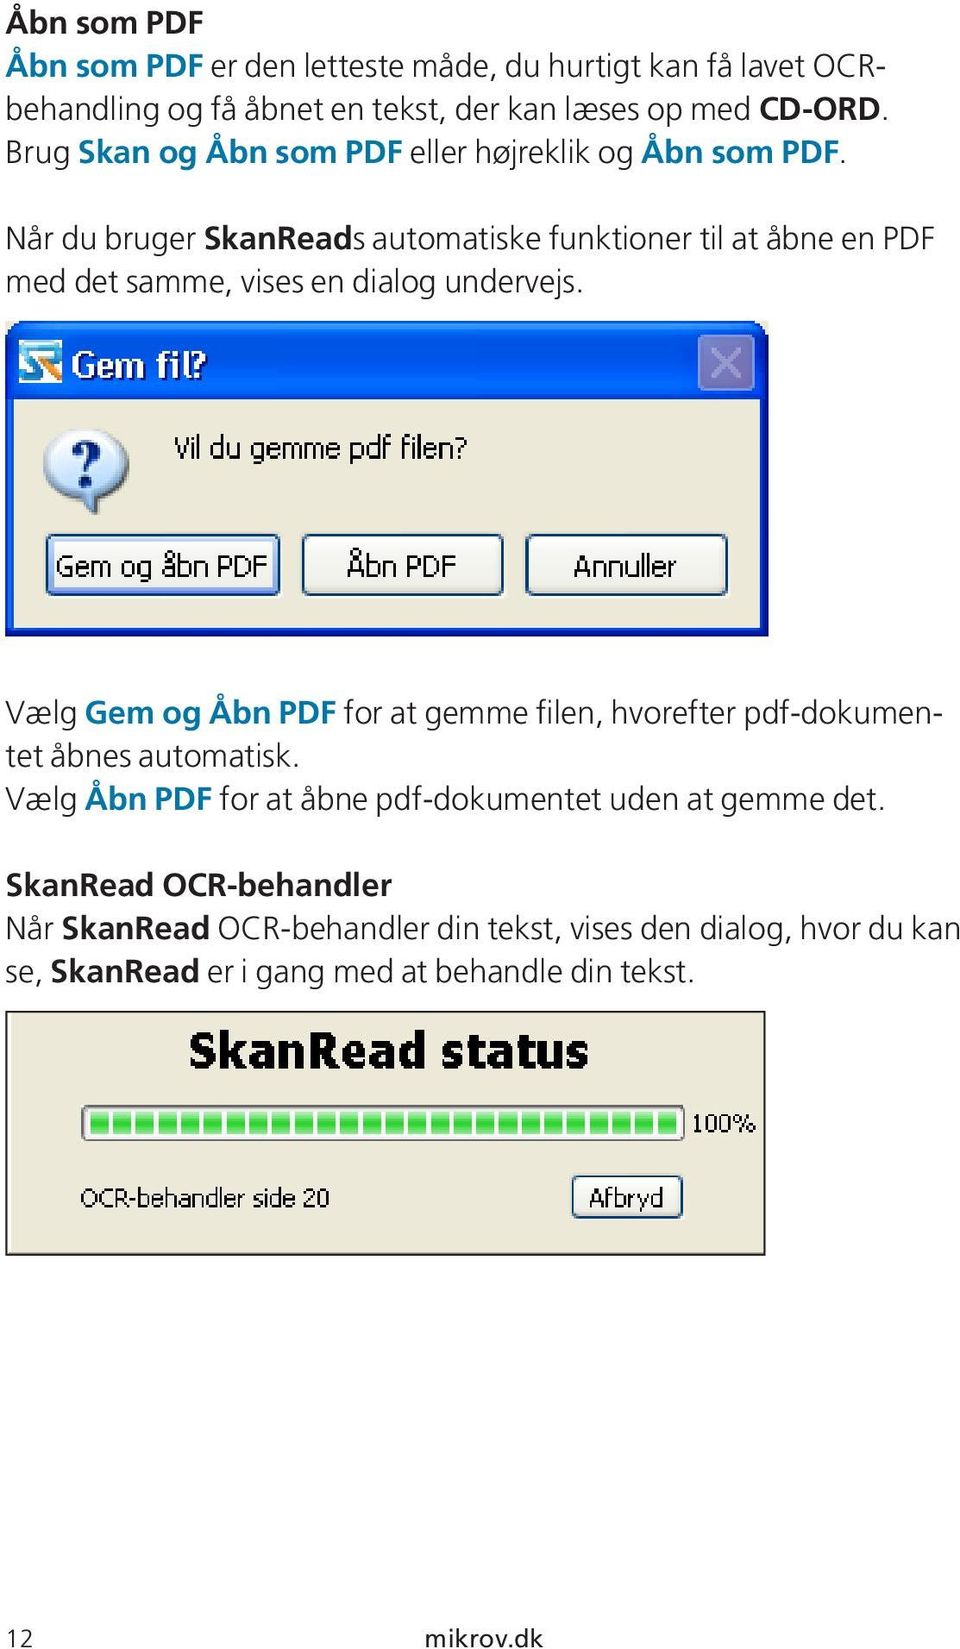 Når du bruger SkanReads automatiske funktioner til at åbne en PDF med det samme, vises en dialog undervejs.